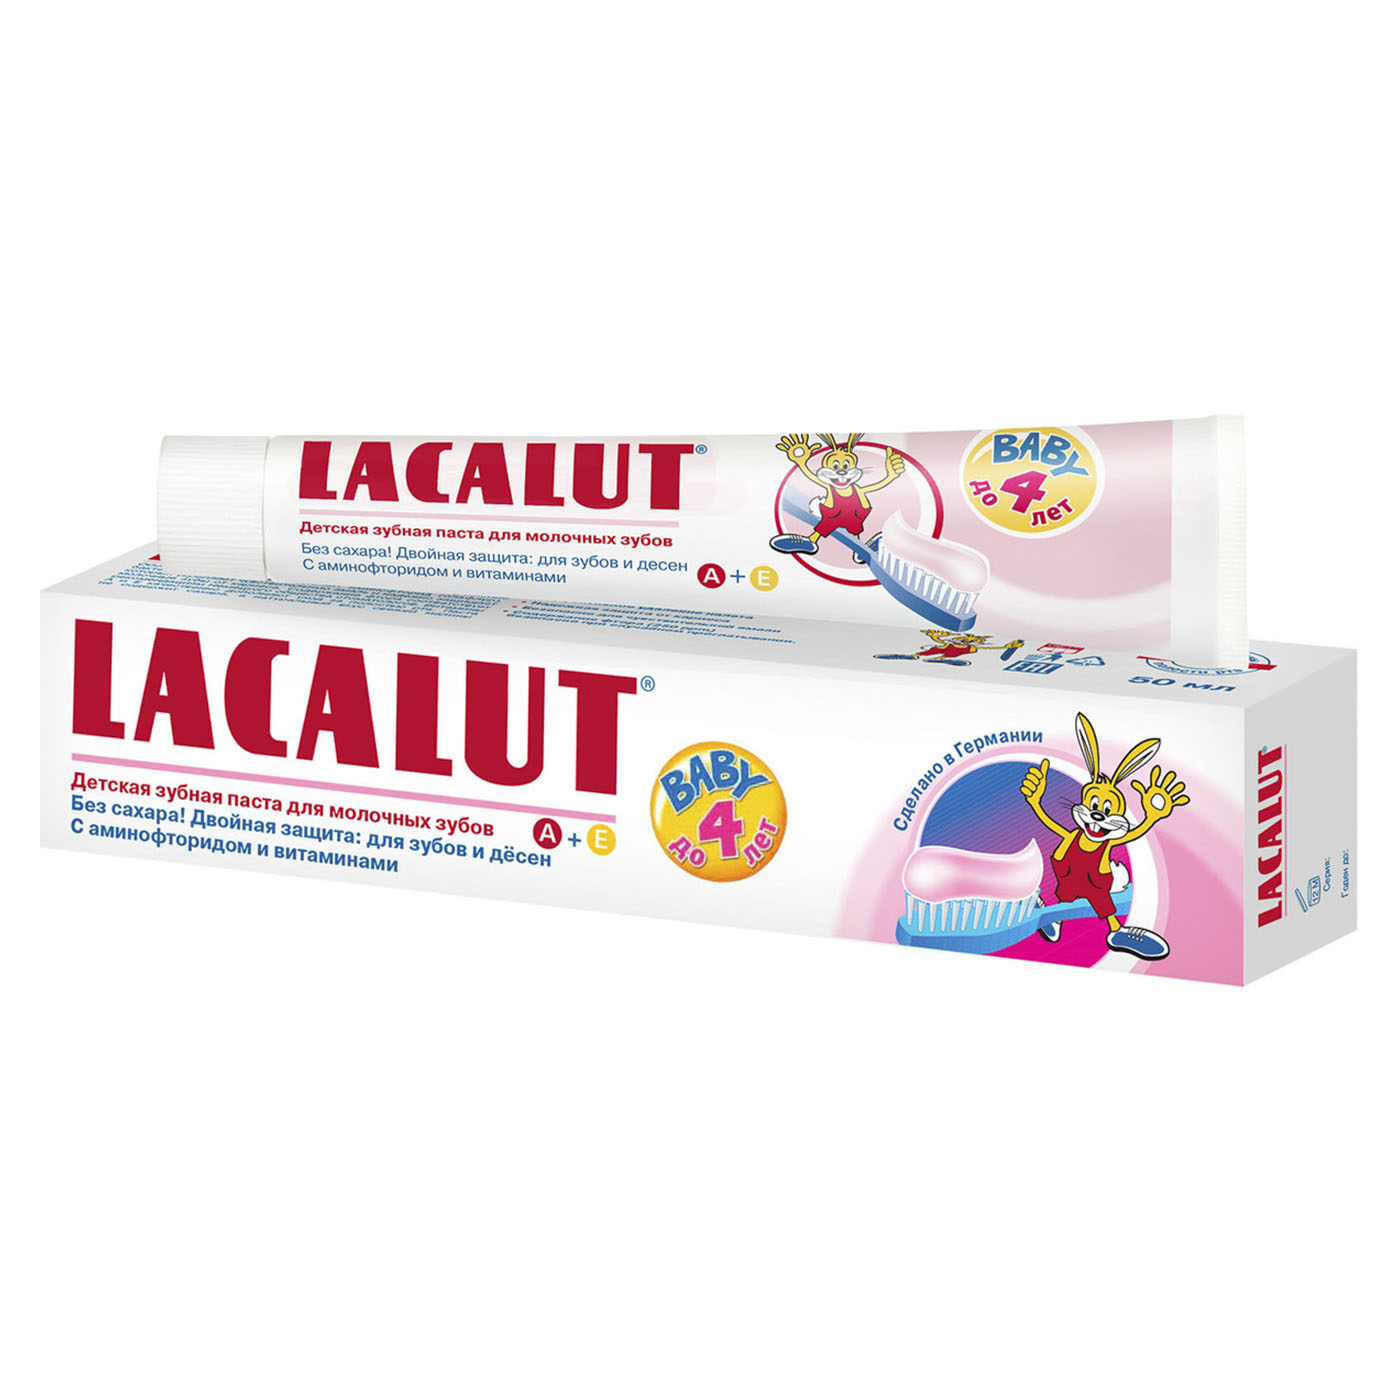 Купить Lacalut Лакалют Бейби детская зубная паста до 4 лет, 50 мл (Lacalut, Зубные пасты), Германия